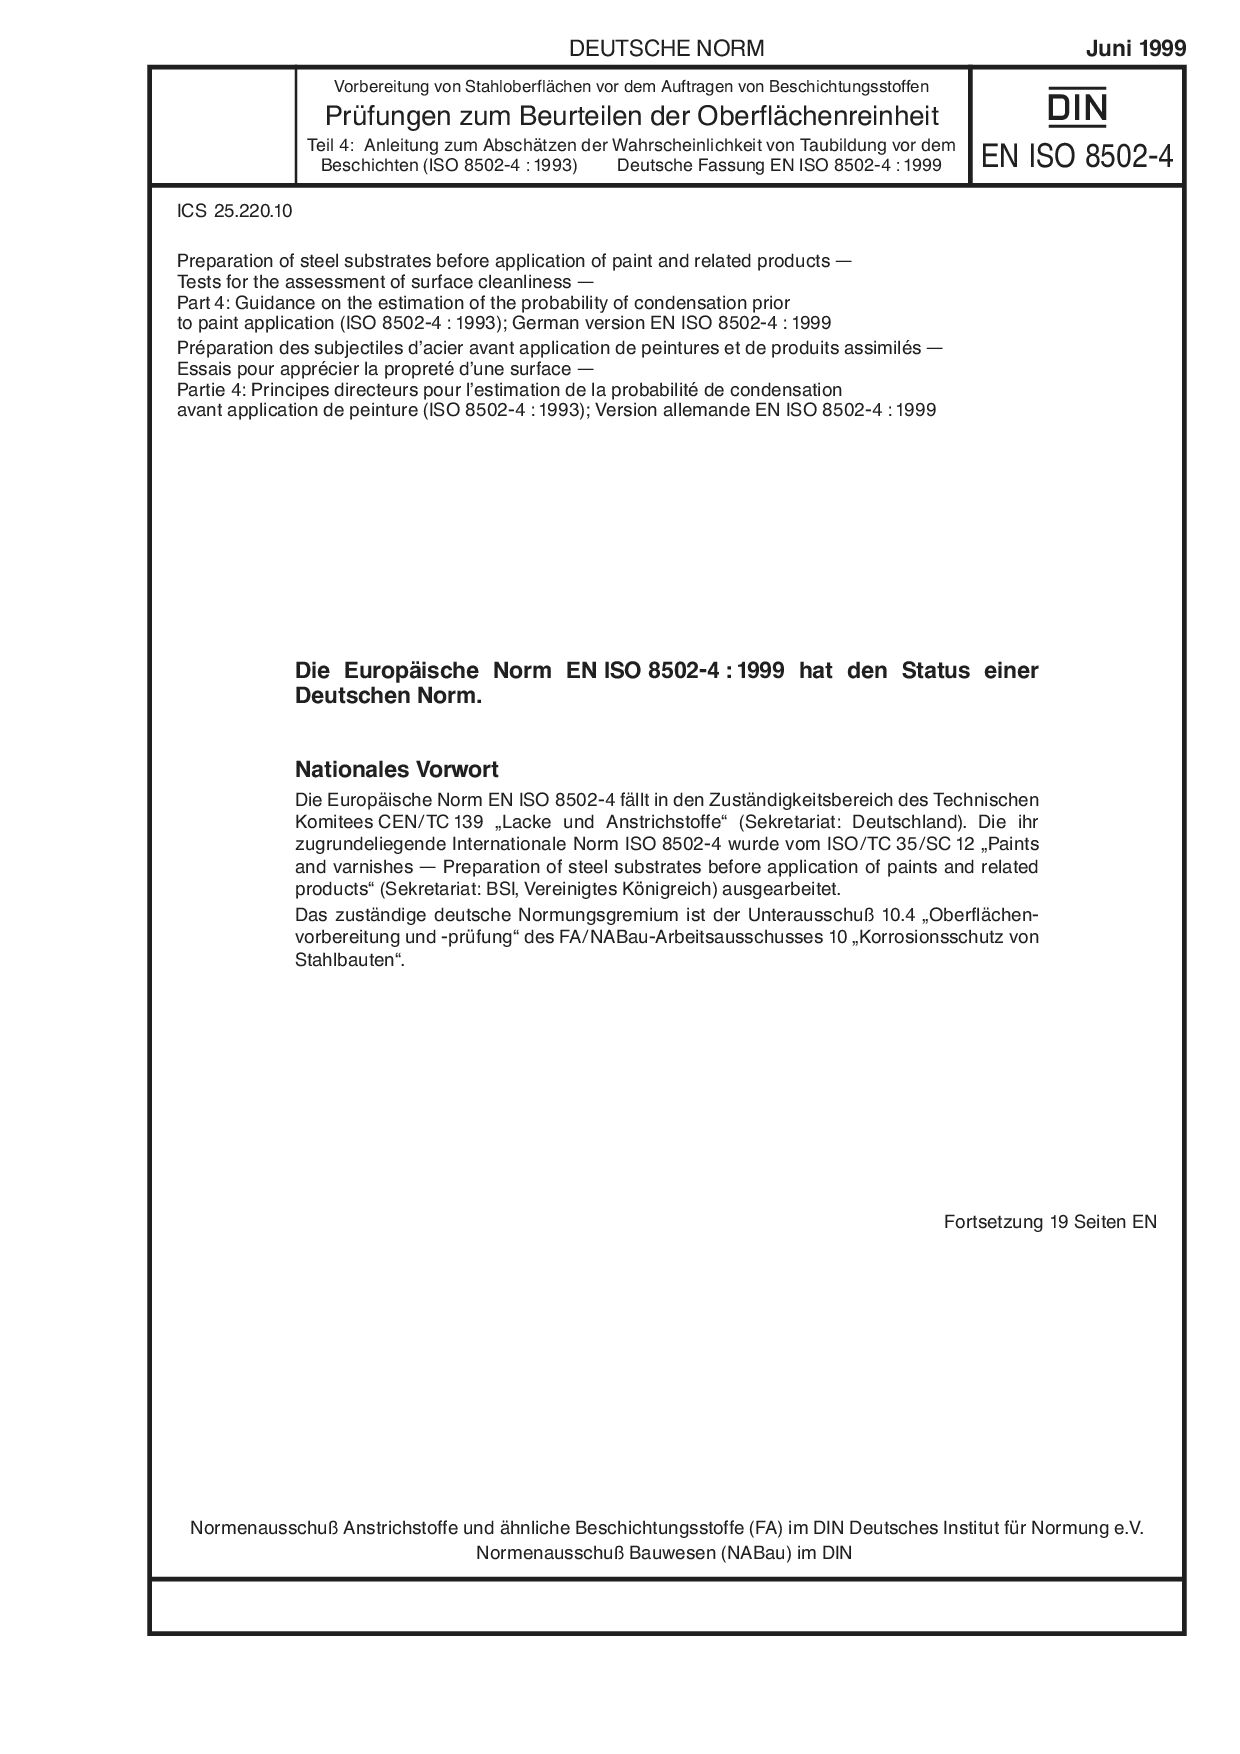 DIN EN ISO 8502-4:1999